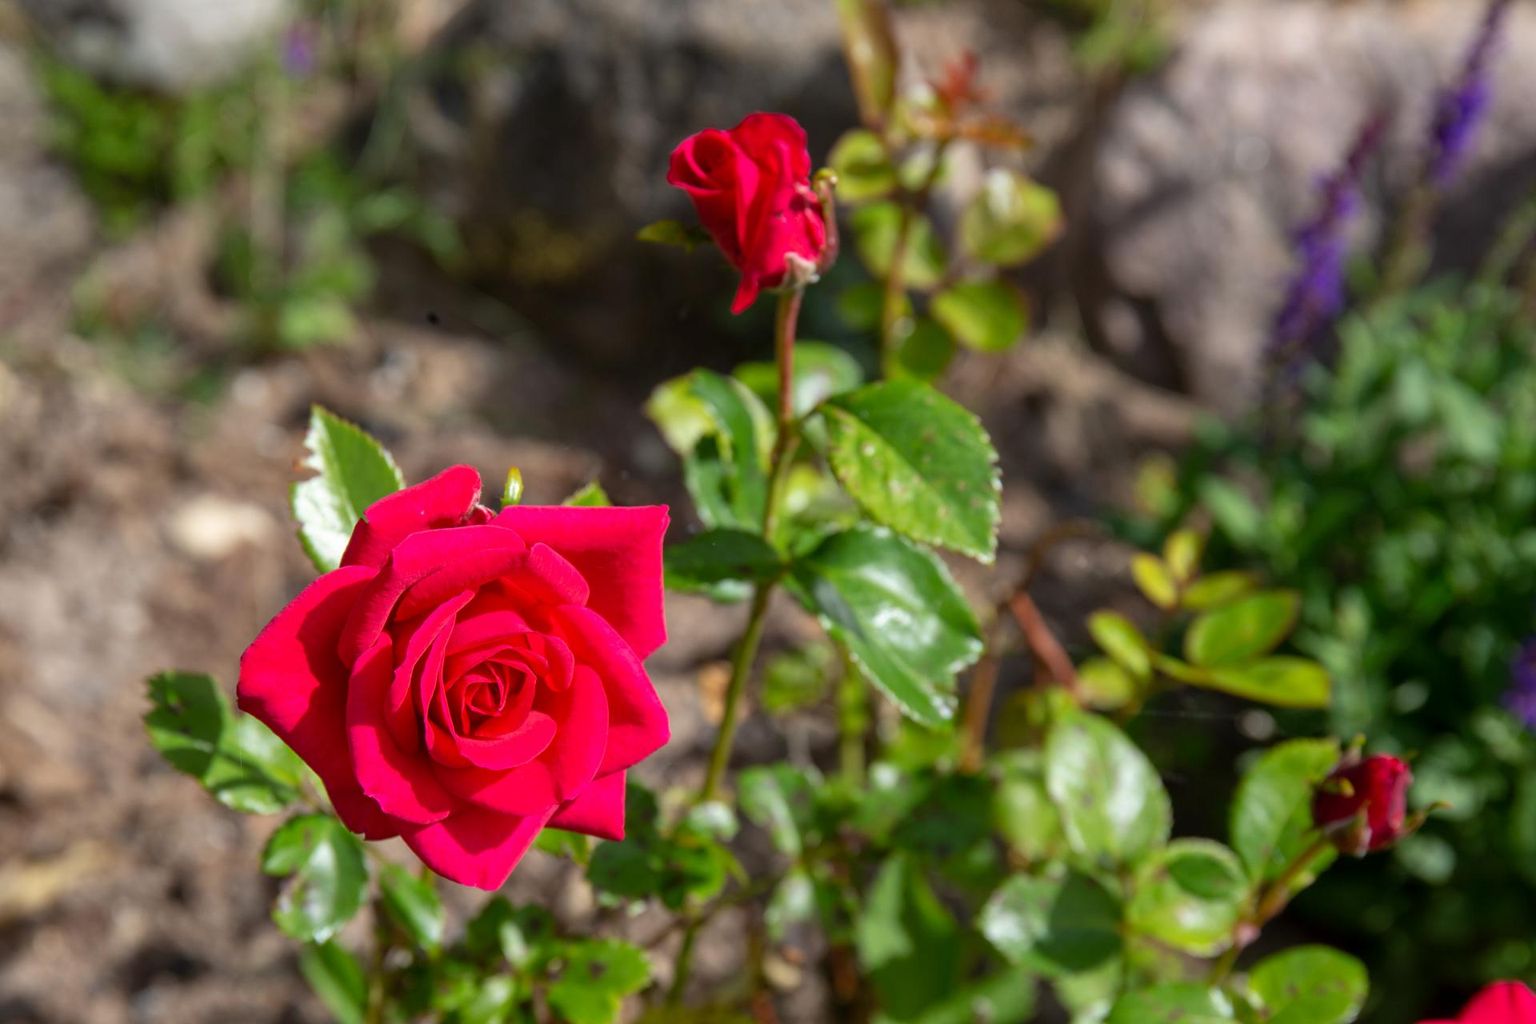 Põltsamaa roosiaias on erinevaid sorti roose üle 200.